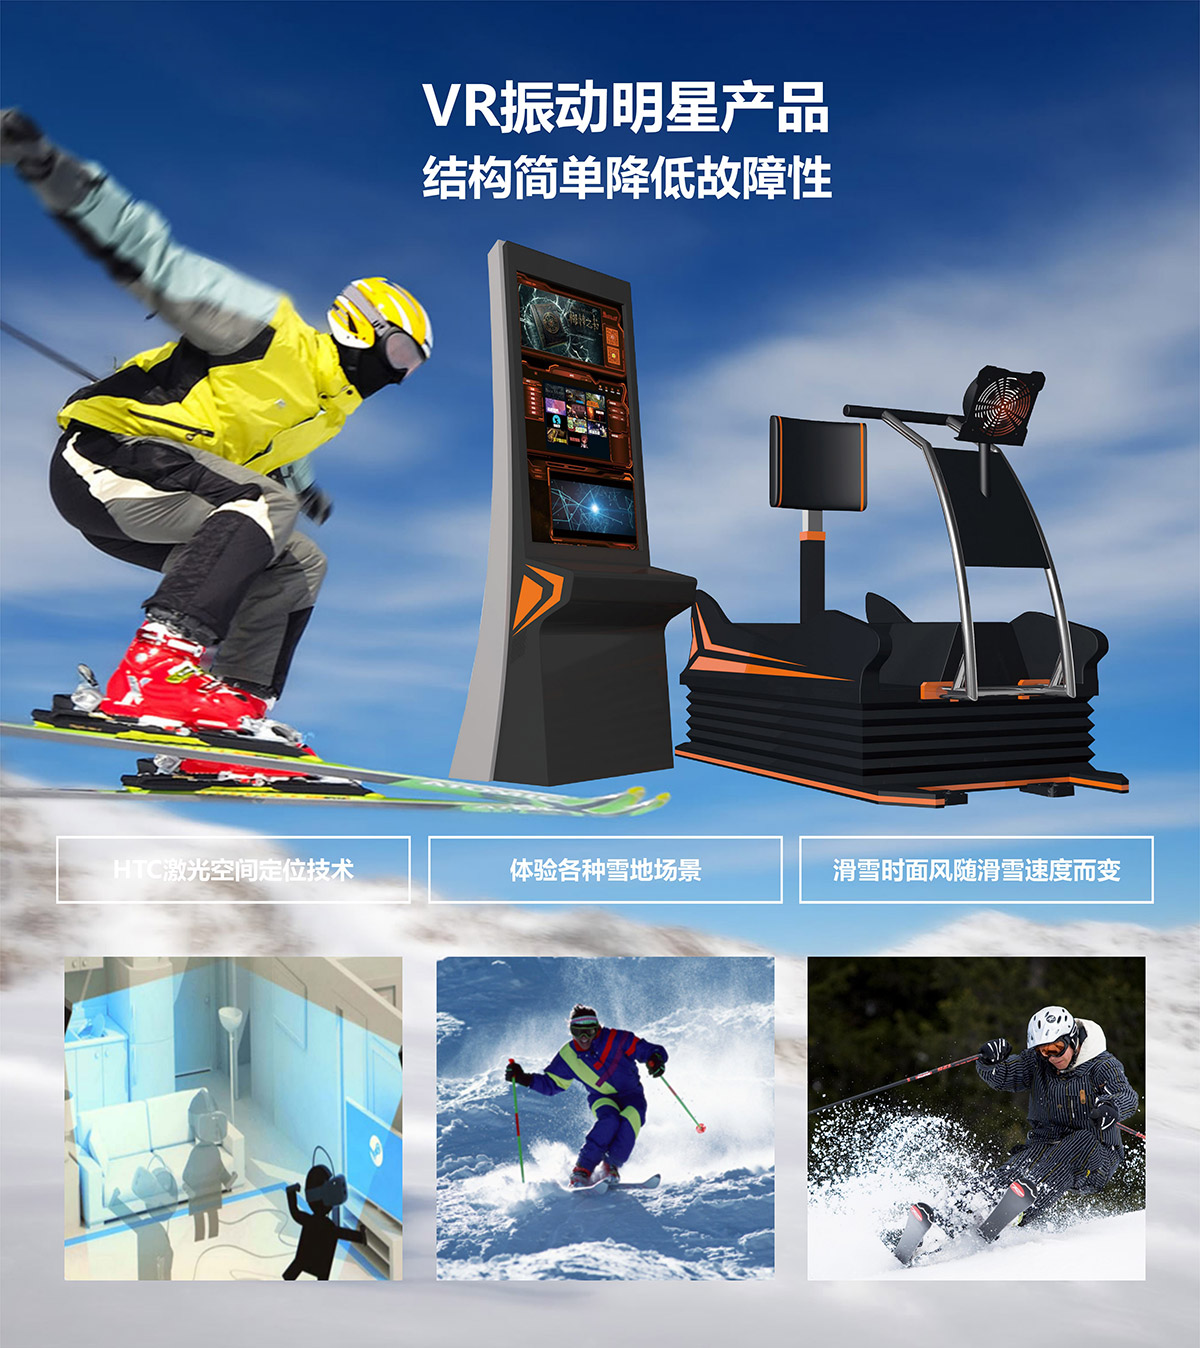 社区安全VR明星产品模拟滑雪.jpg